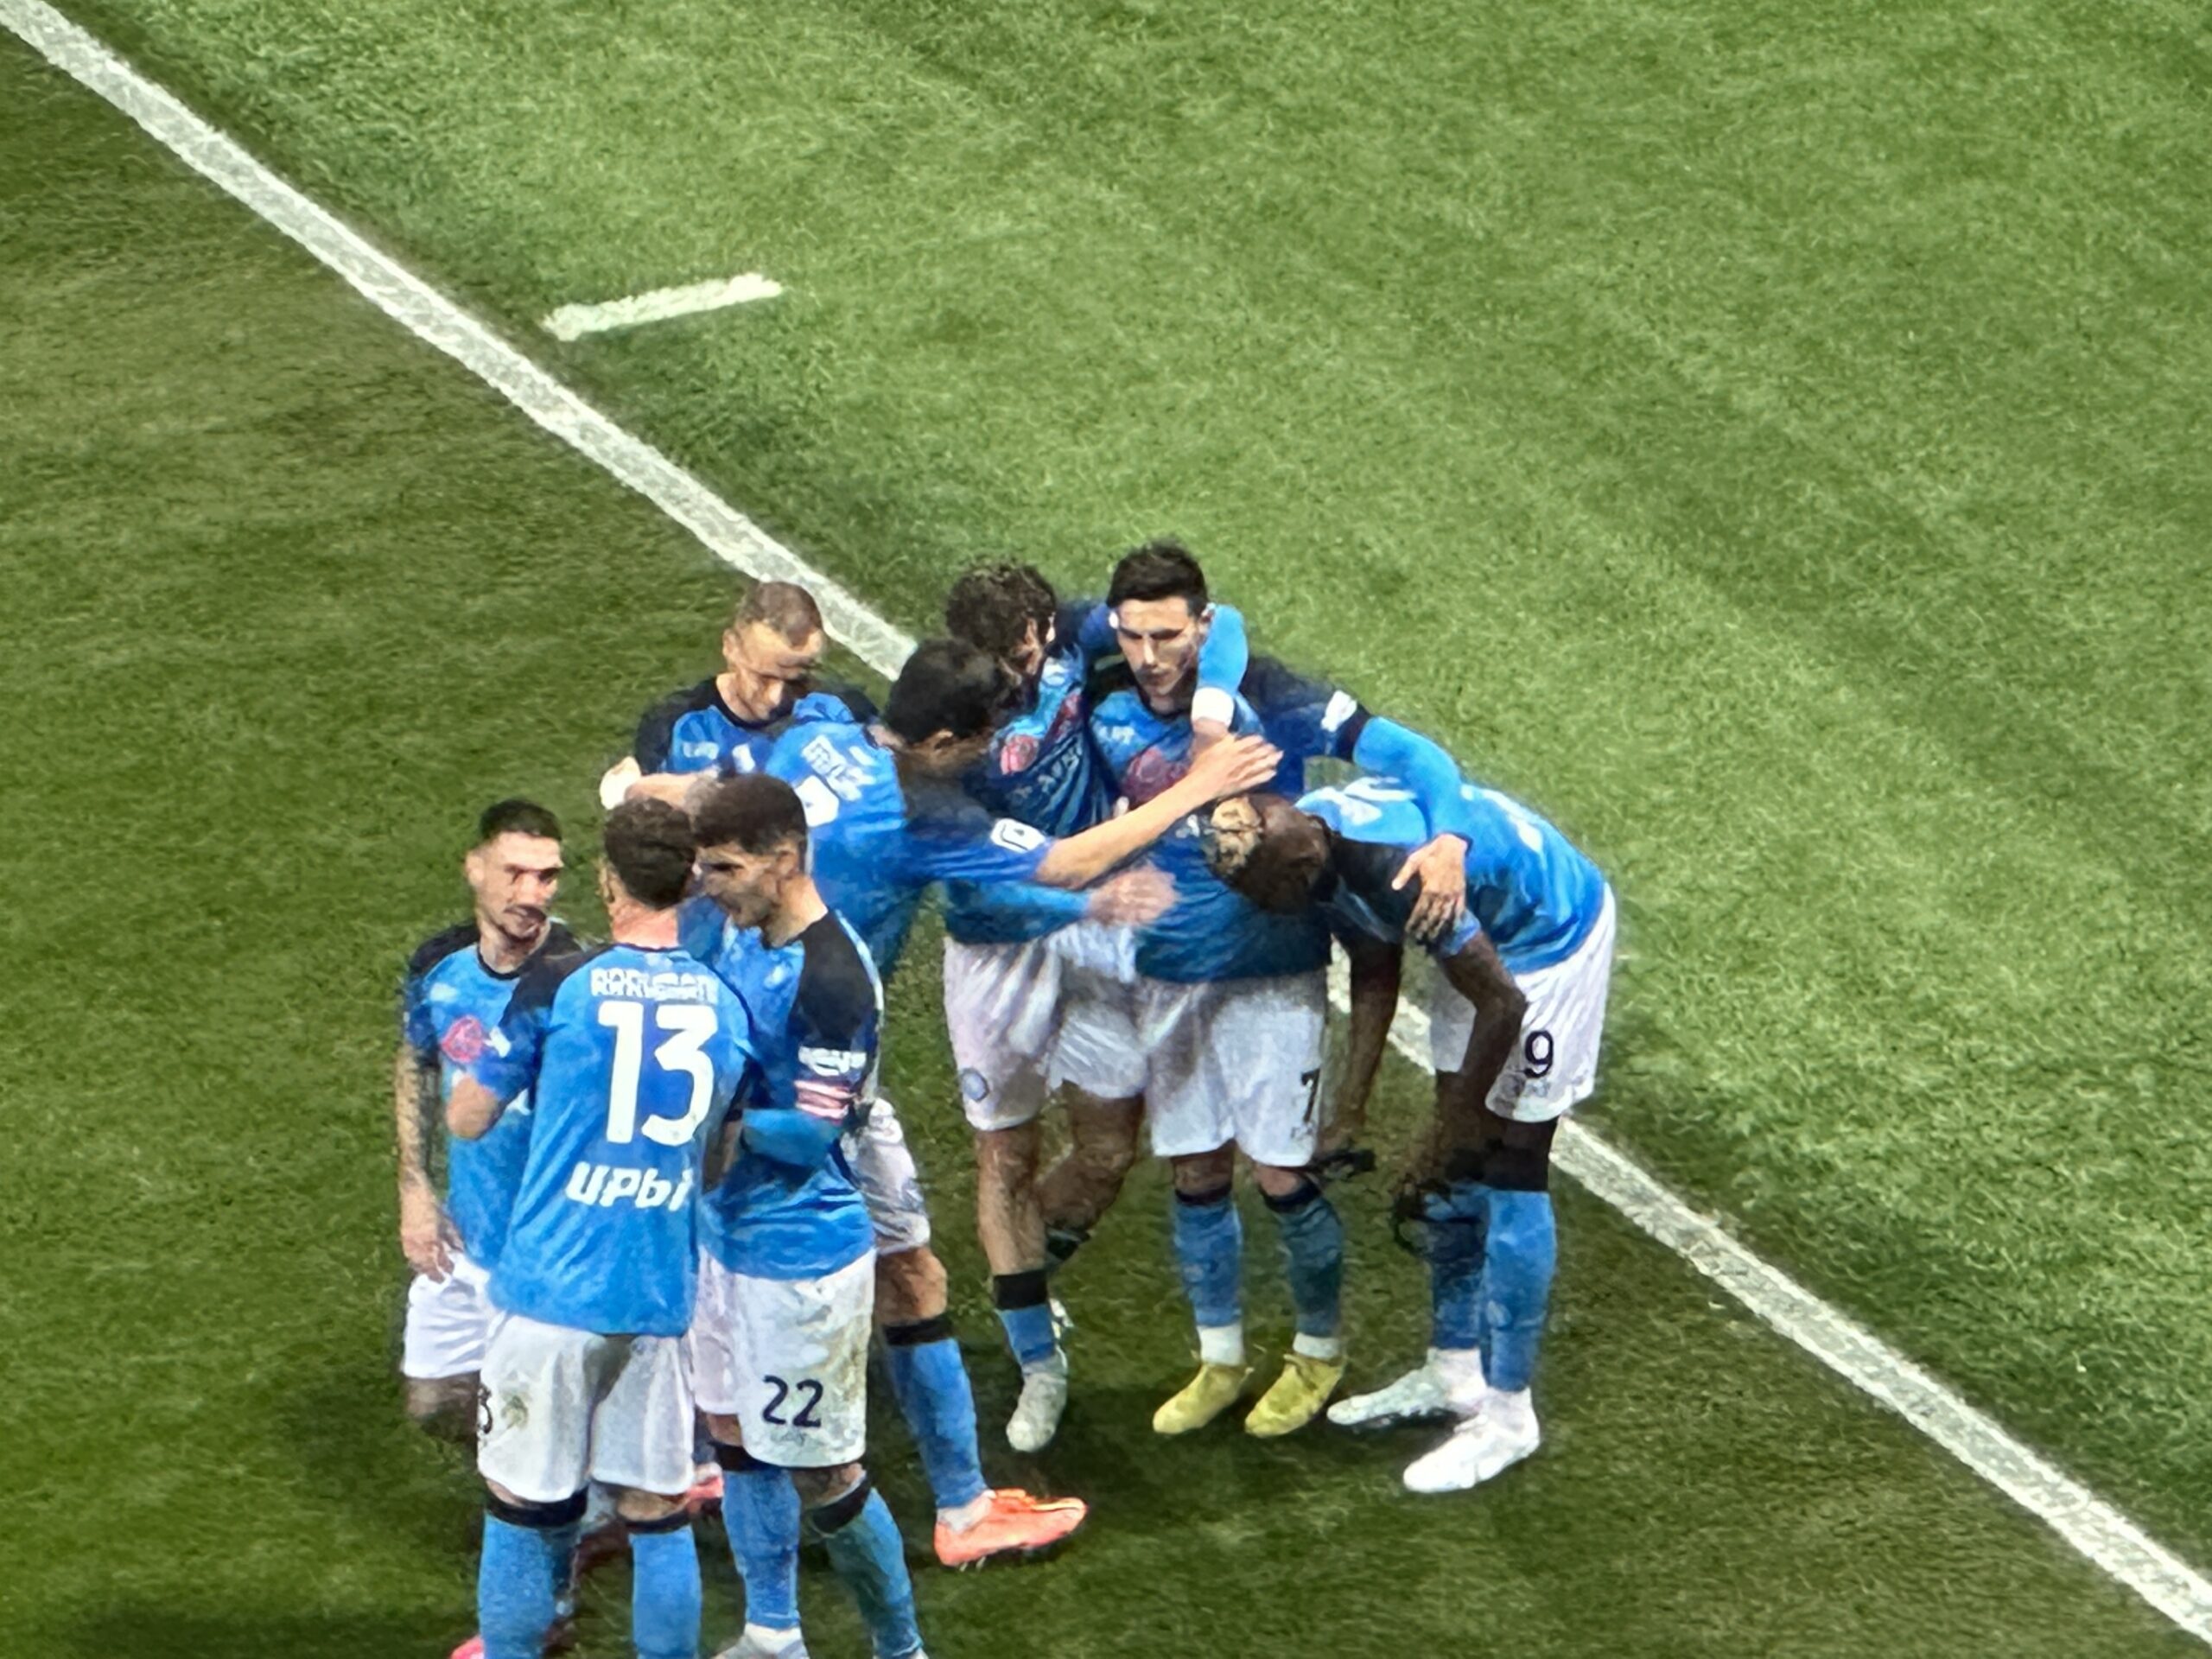 Il Napoli continua a dominare la Serie A: vittoria anche in casa del Sassuolo